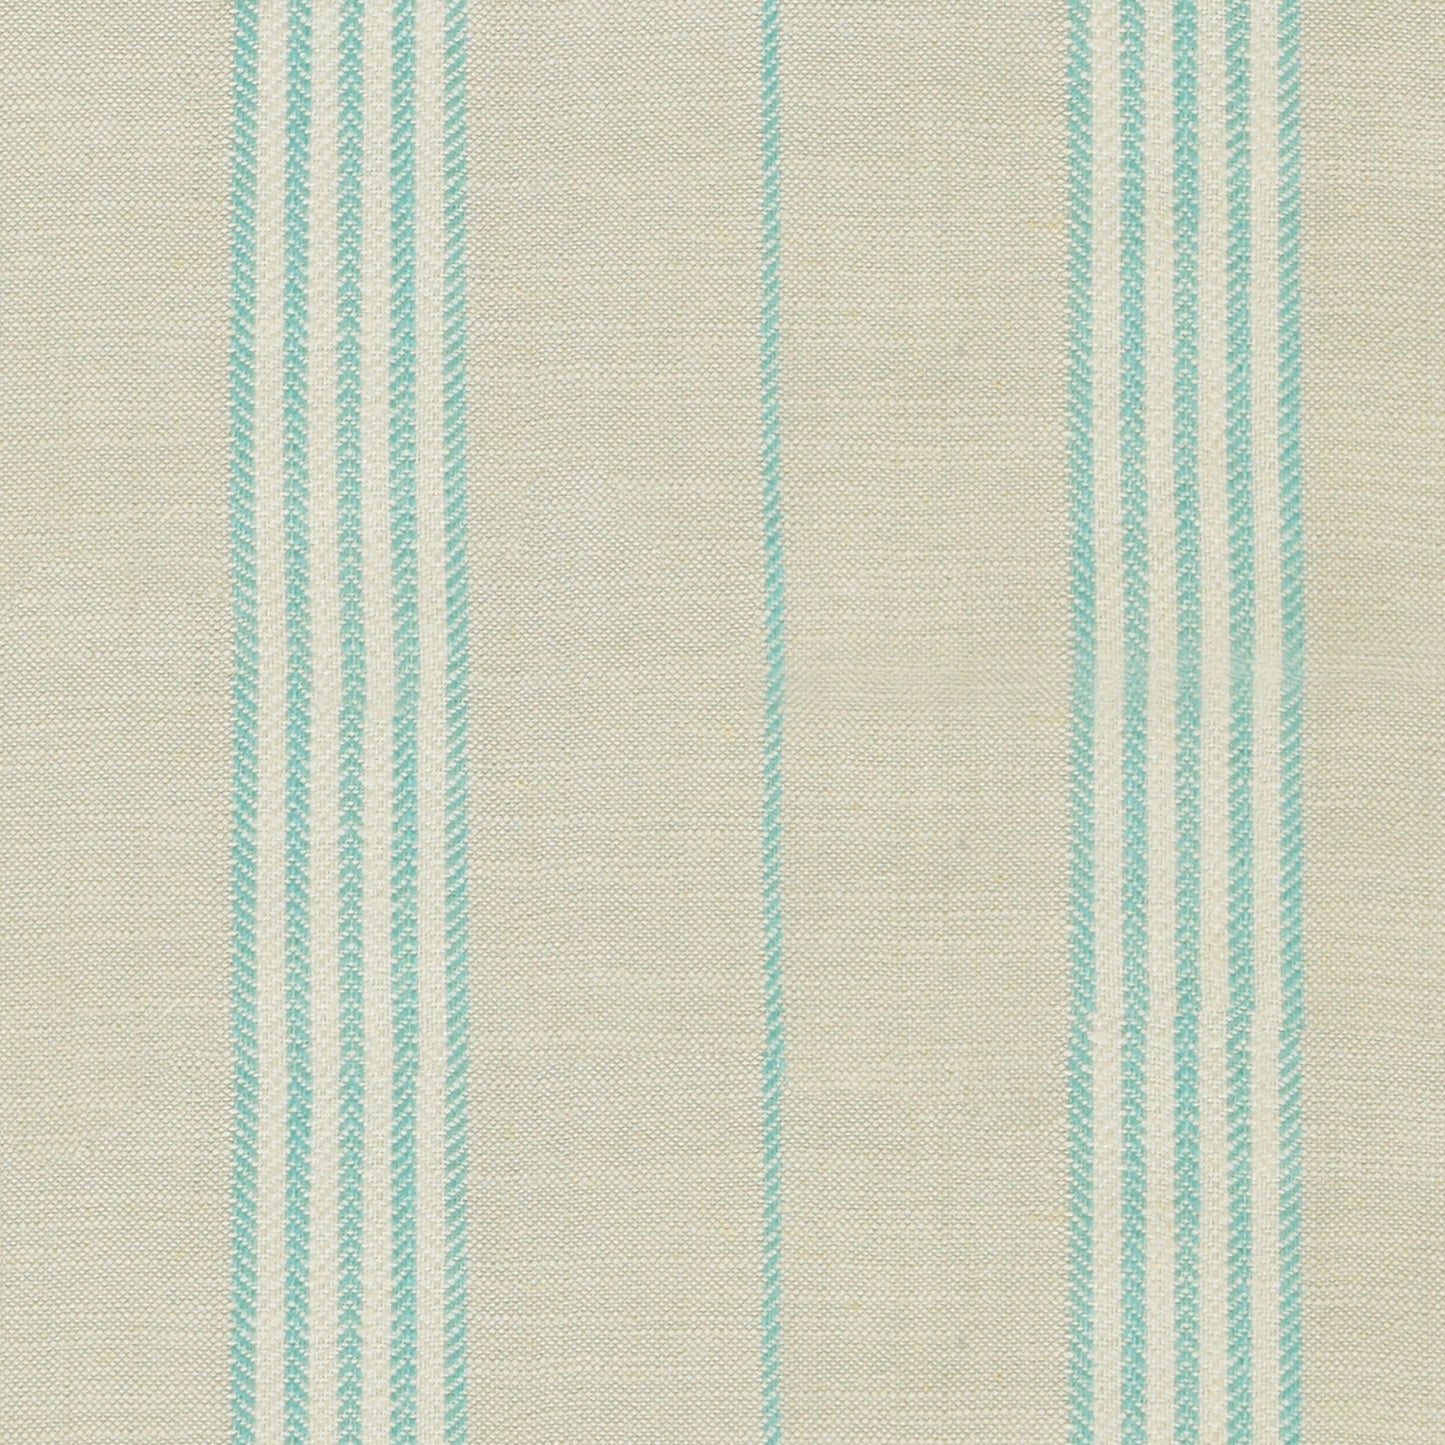 Rhodes Island Fabric